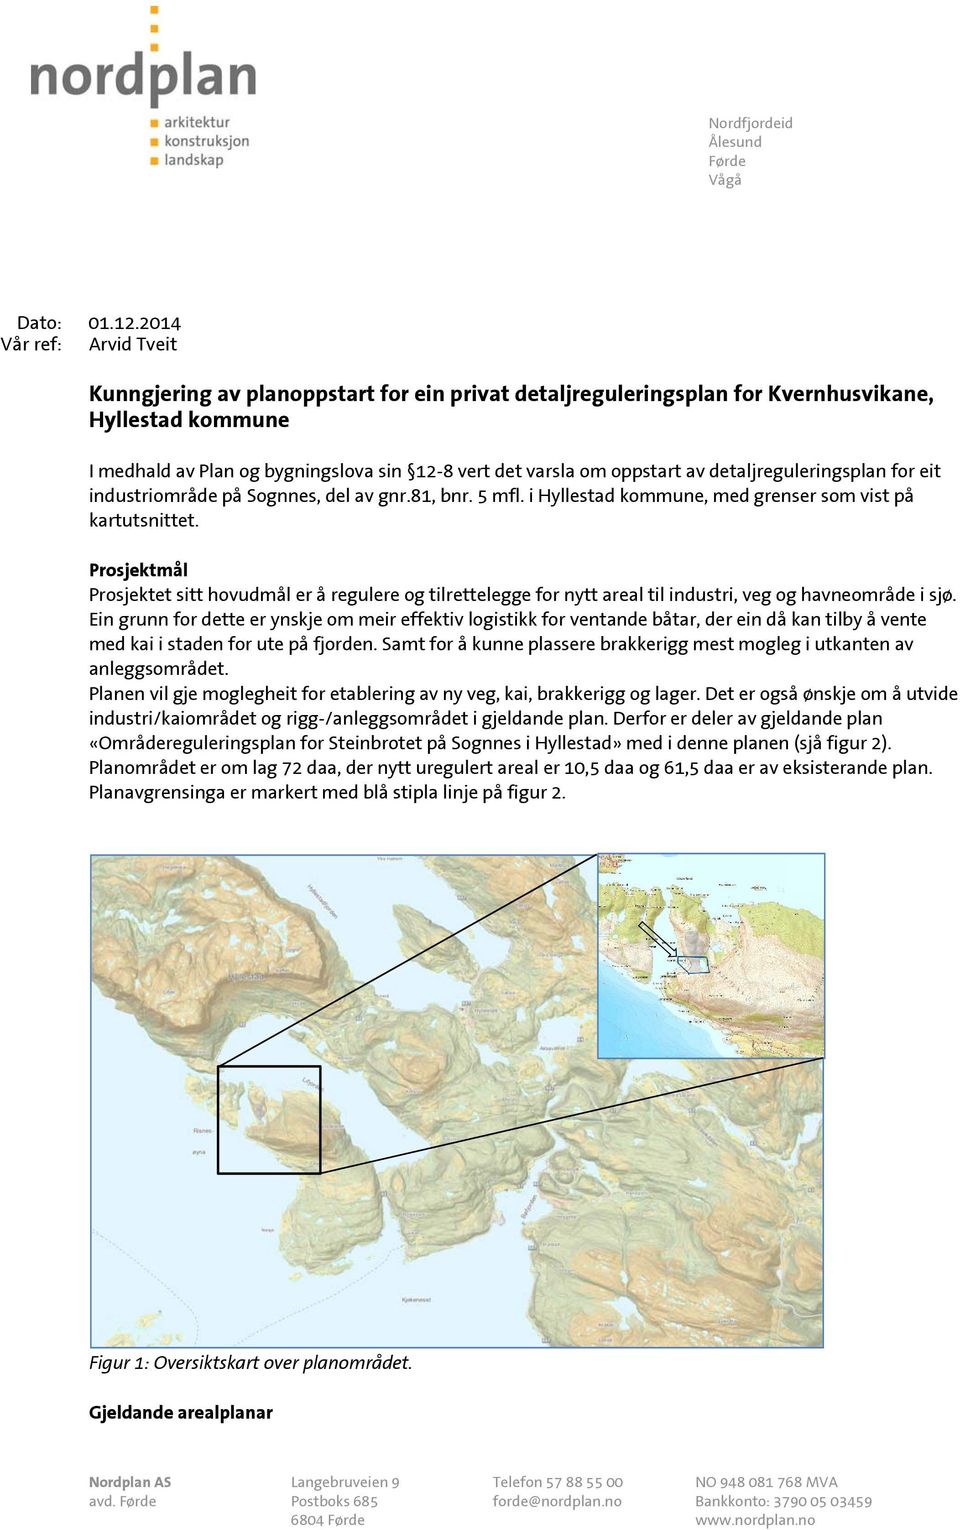 av detaljreguleringsplan for eit industriområde på Sognnes, del av gnr.81, bnr. 5 mfl. i Hyllestad kommune, med grenser som vist på kartutsnittet.